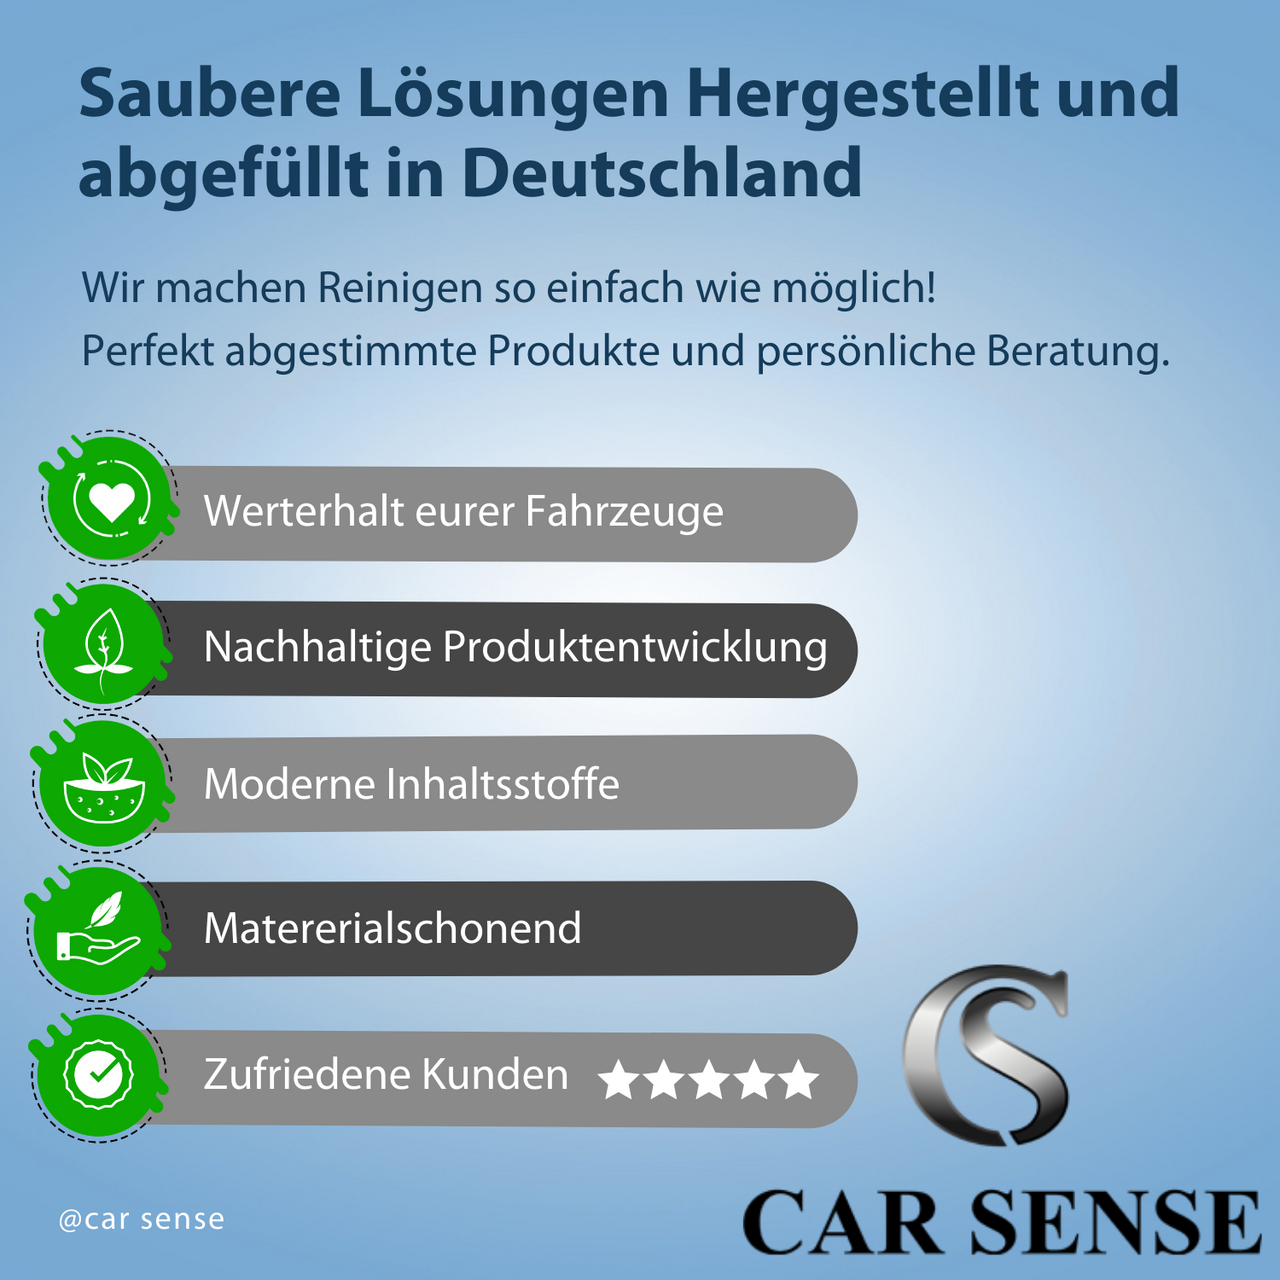 Car Sense Final Finish Wax Protect + Premium Versiegelung mit Hochglanz für Langzeitschutz und brillanten Glanzgrad